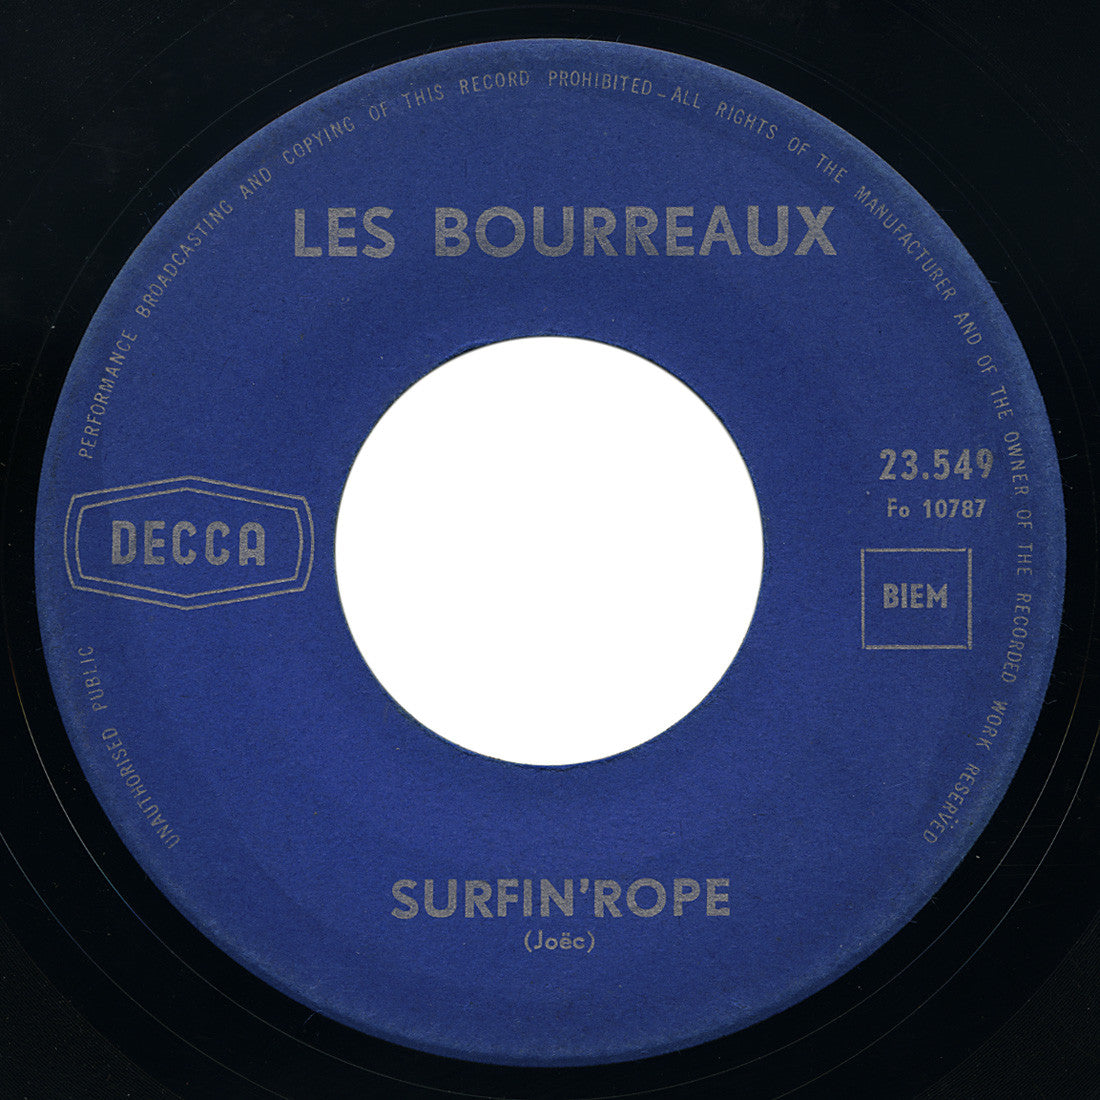 Les Bourreaux – Surfin’ Rope – Decca